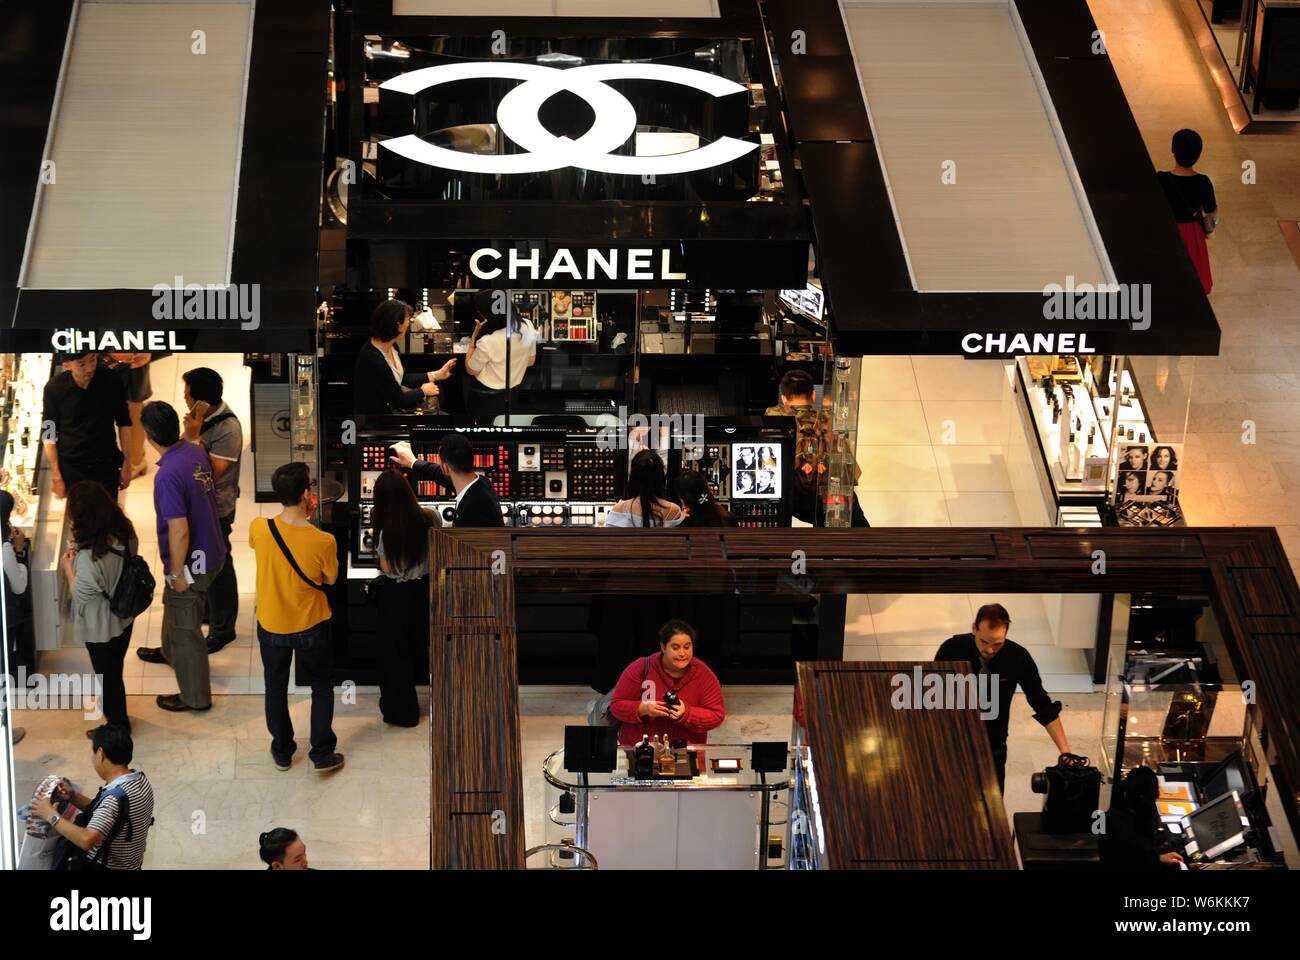 Chinesische Kunden Online-Shop für Kosmetik und Hautpflege Produkte auf  einen Zähler von Chanel am Kaufhaus Galeries Lafayette während der 2016'  Stockfotografie - Alamy